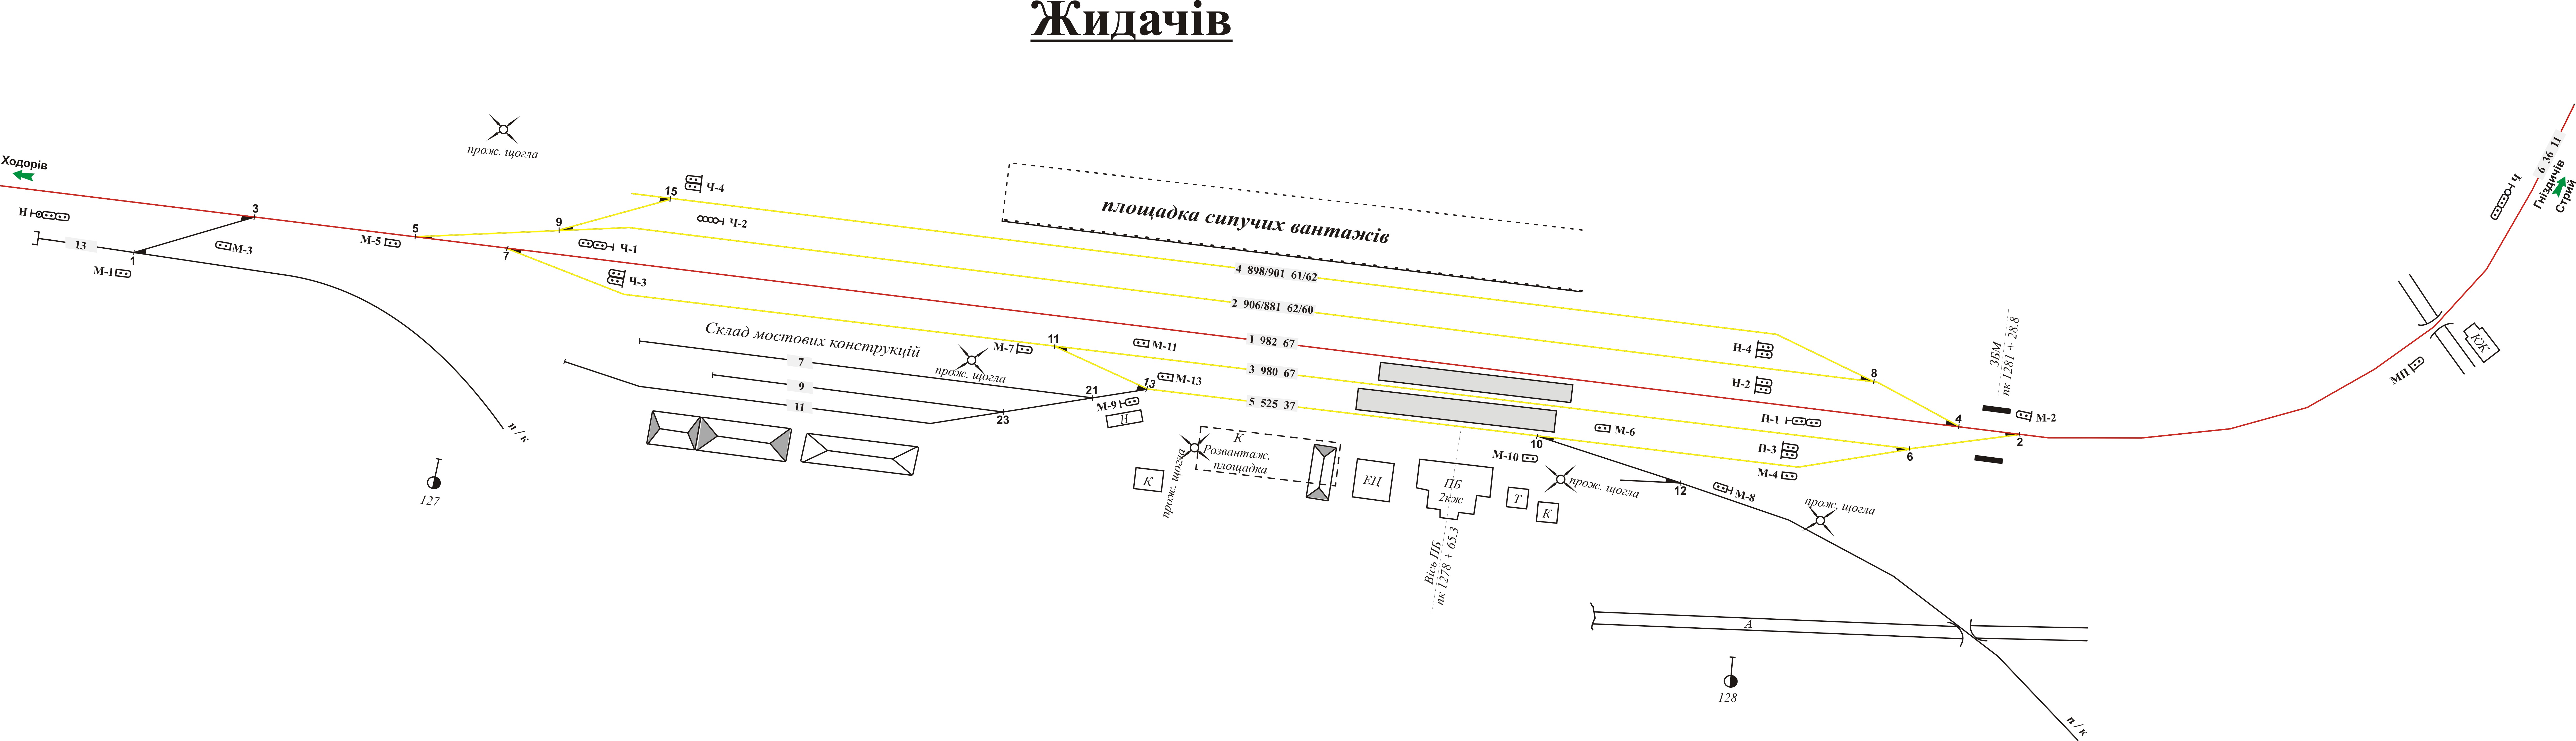 Залізнична станція Жидачів (схема).jpg